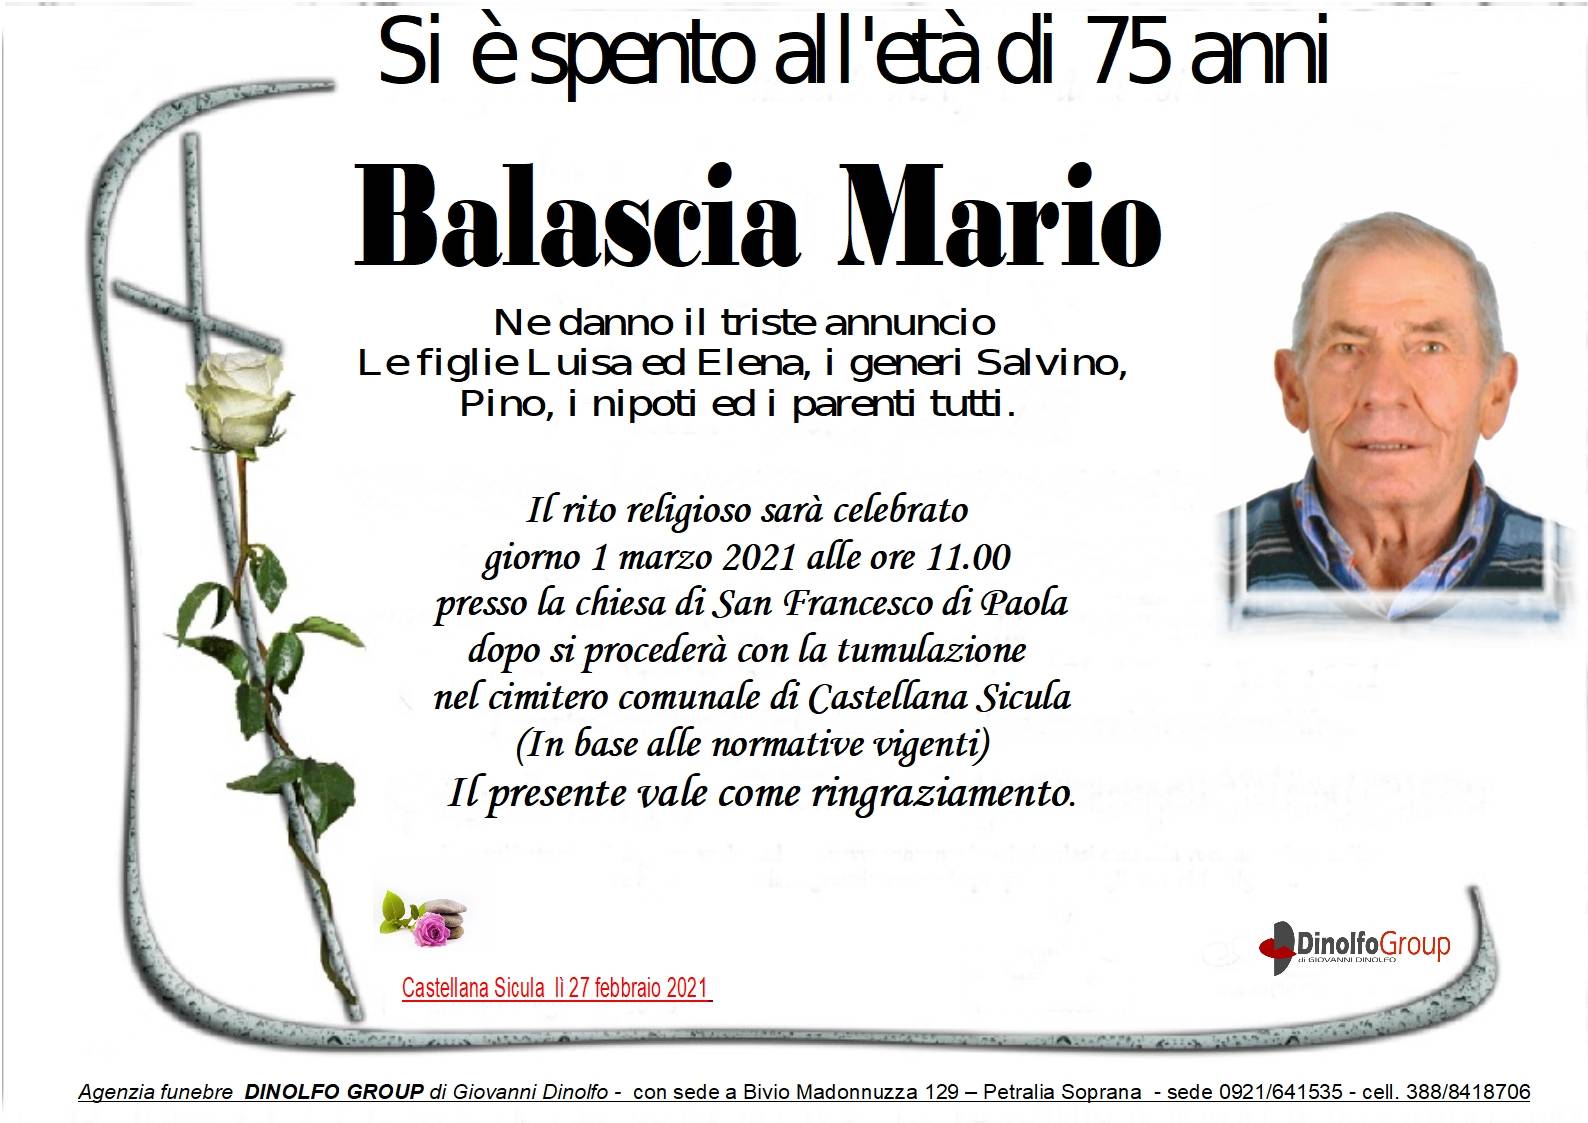 Mario Balascia